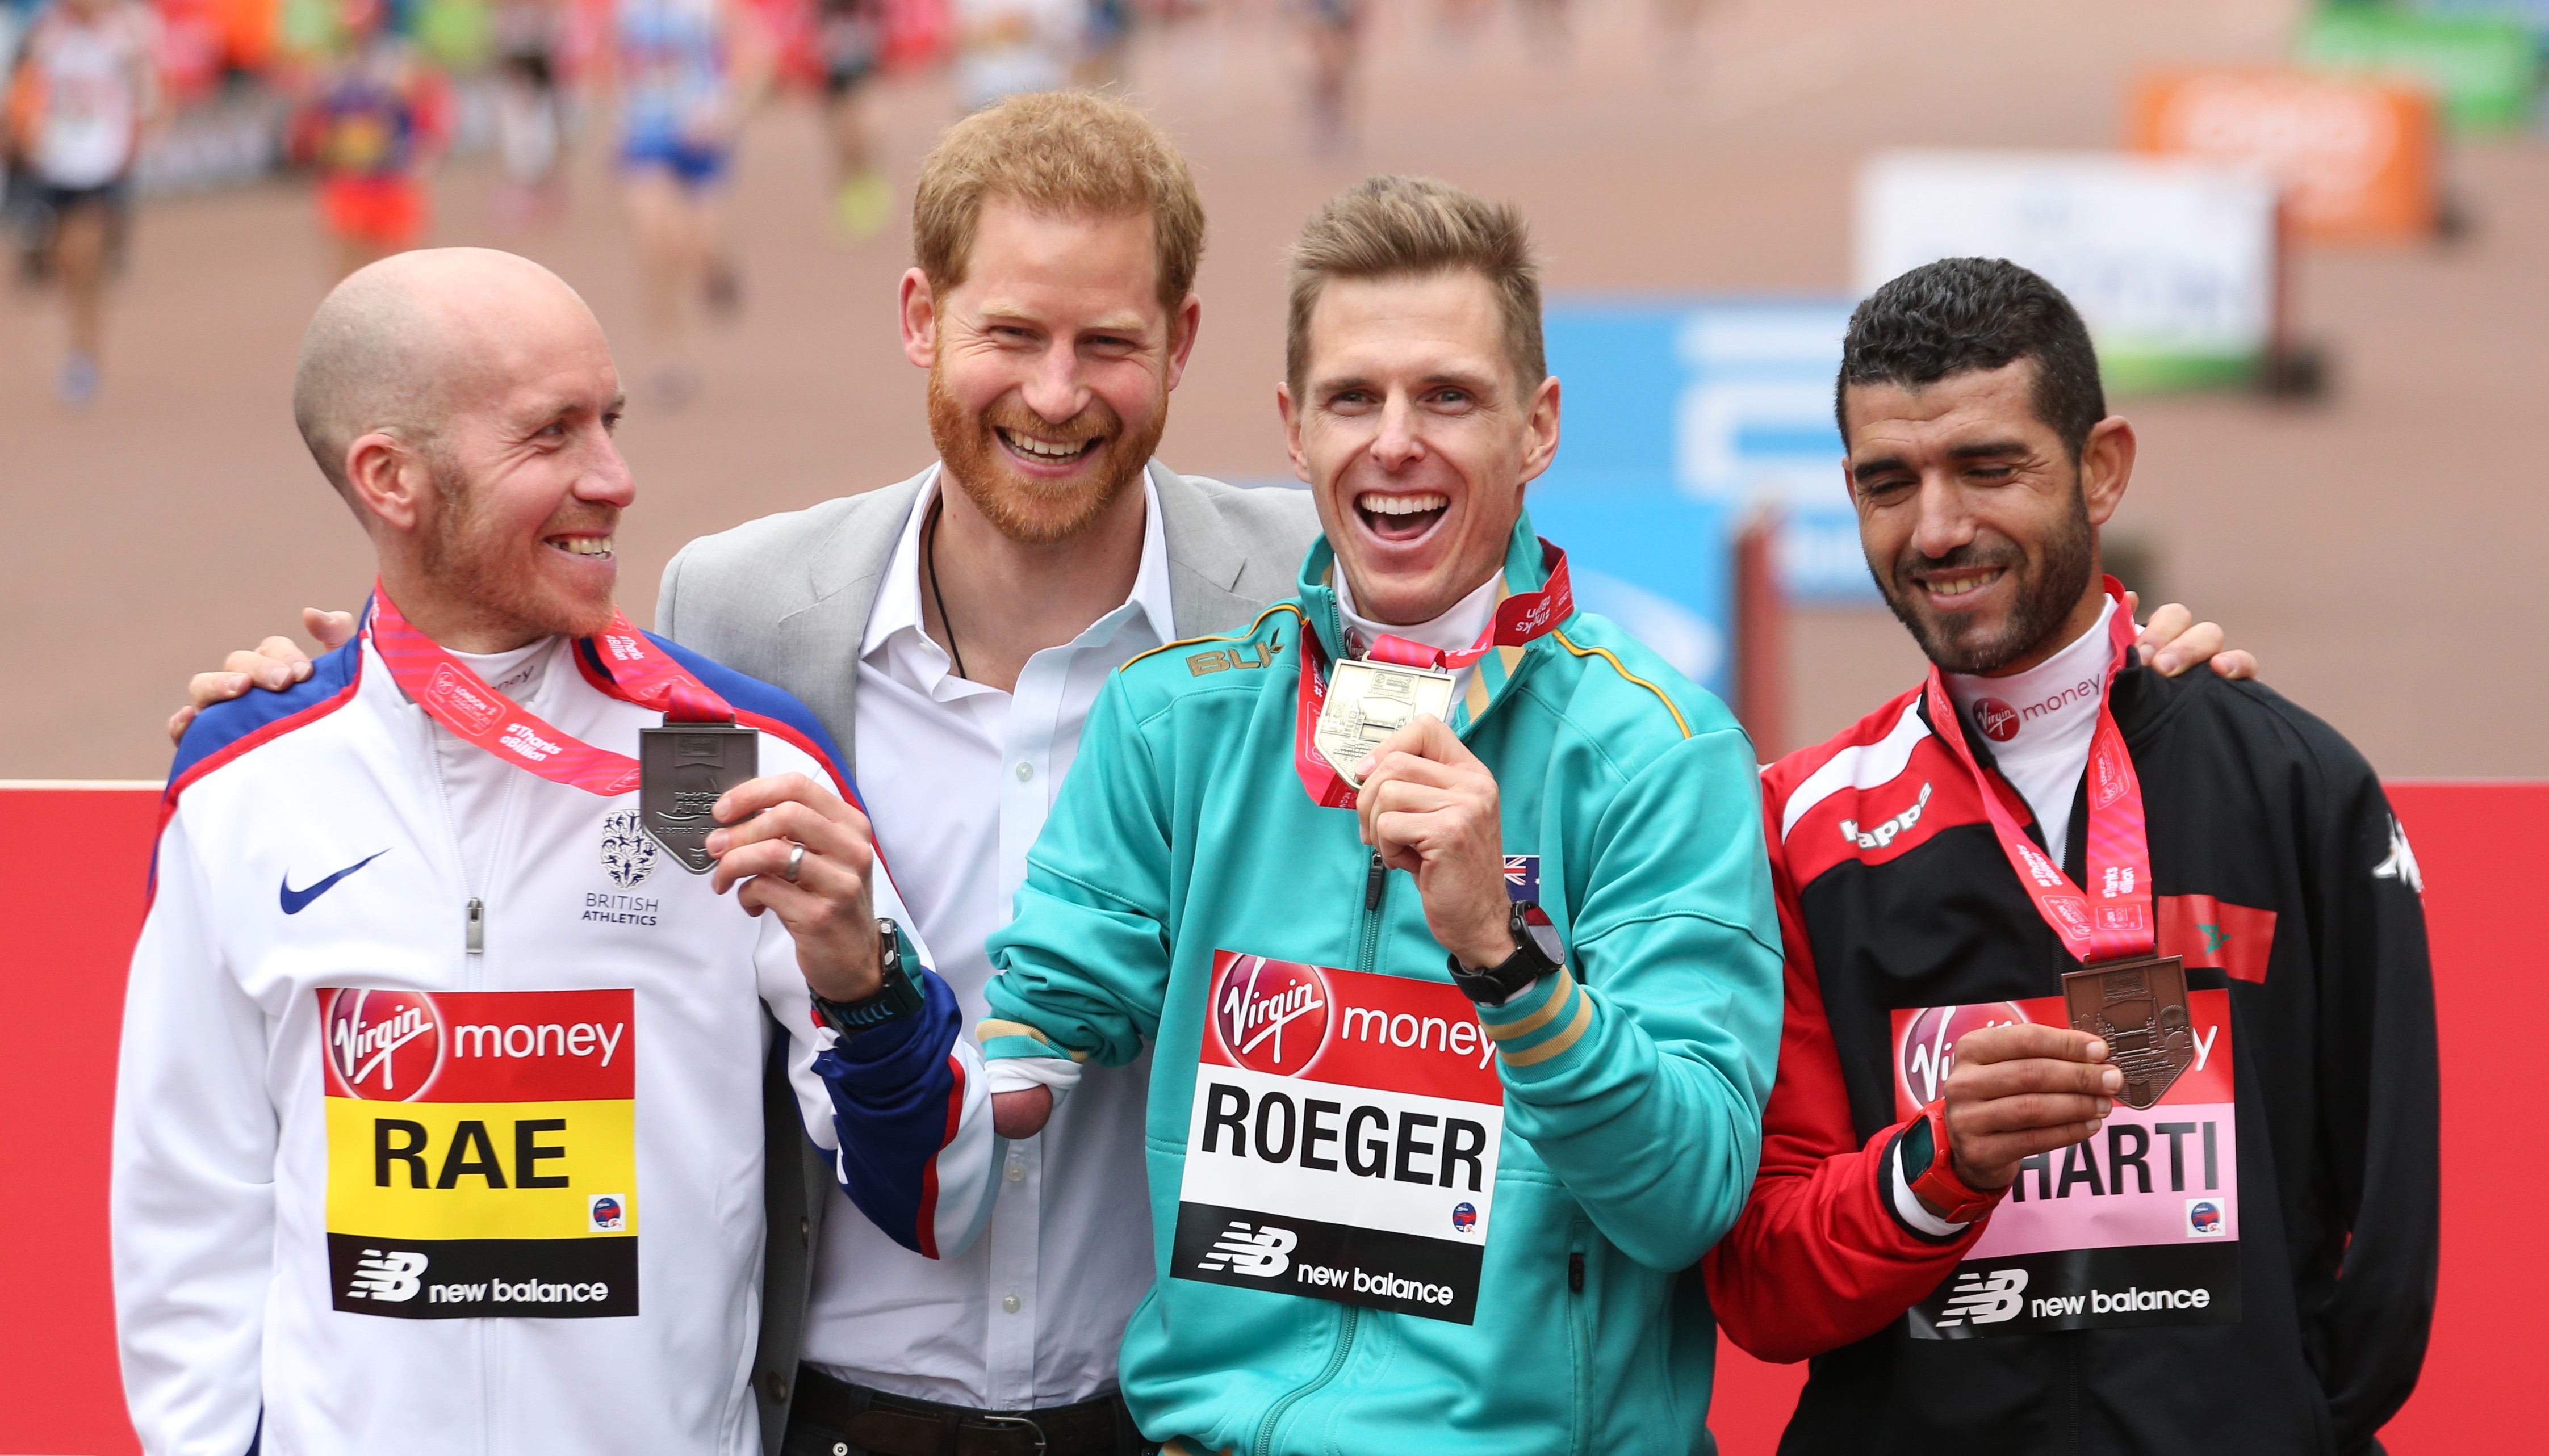 Príncipe Harry na maratona de Londres (Foto: Getty Images)